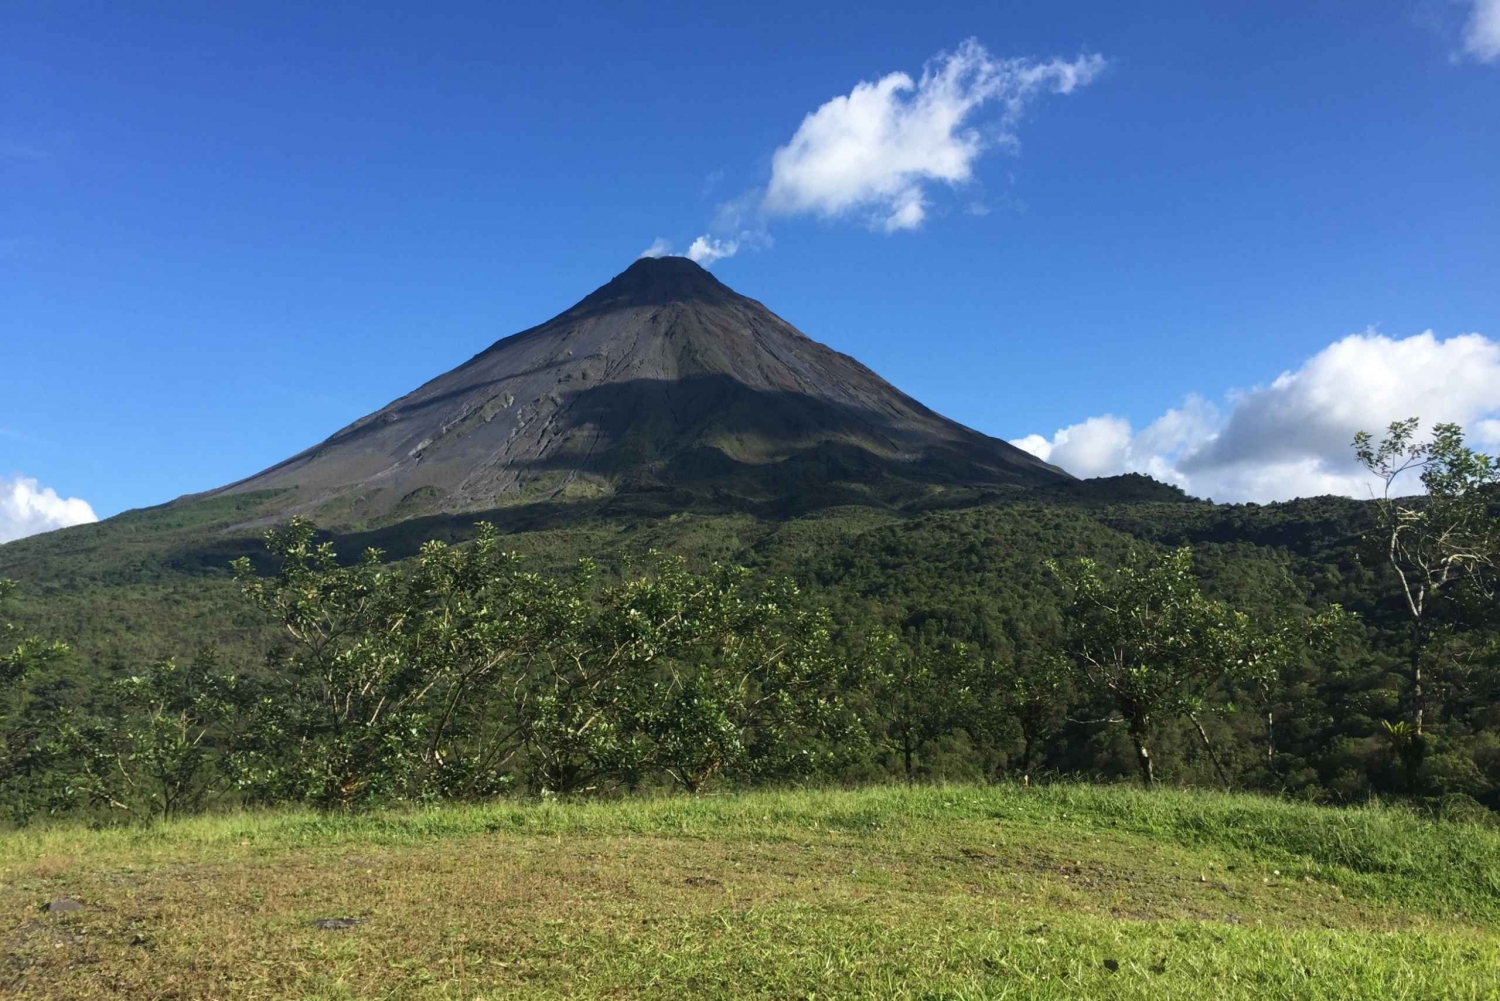 La Fortuna: escursione al vulcano Arenal